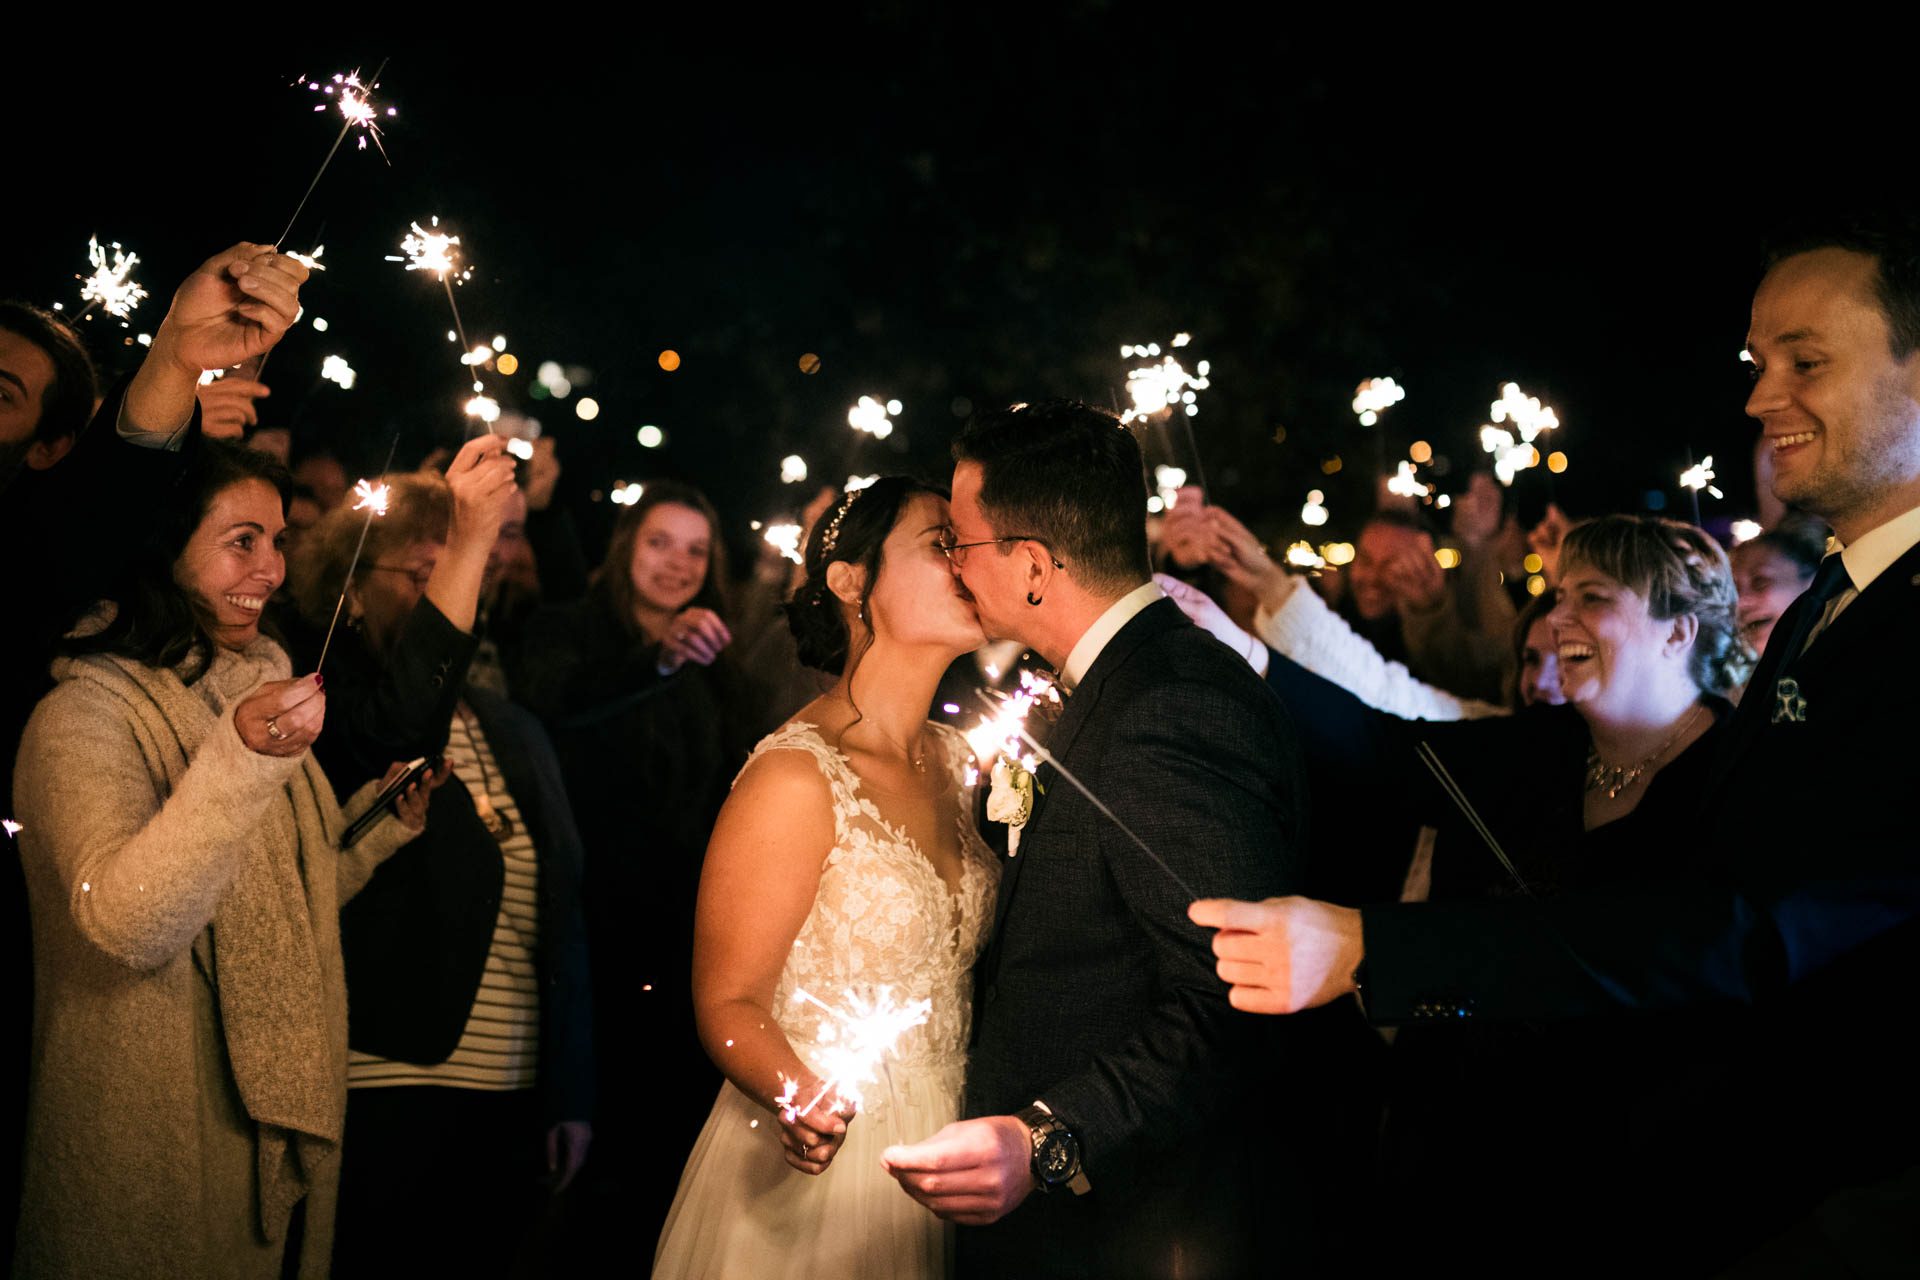 Hochzeitsfotograf Walsrode. Das Brautpaar mit Wunderkerzen bei Nacht